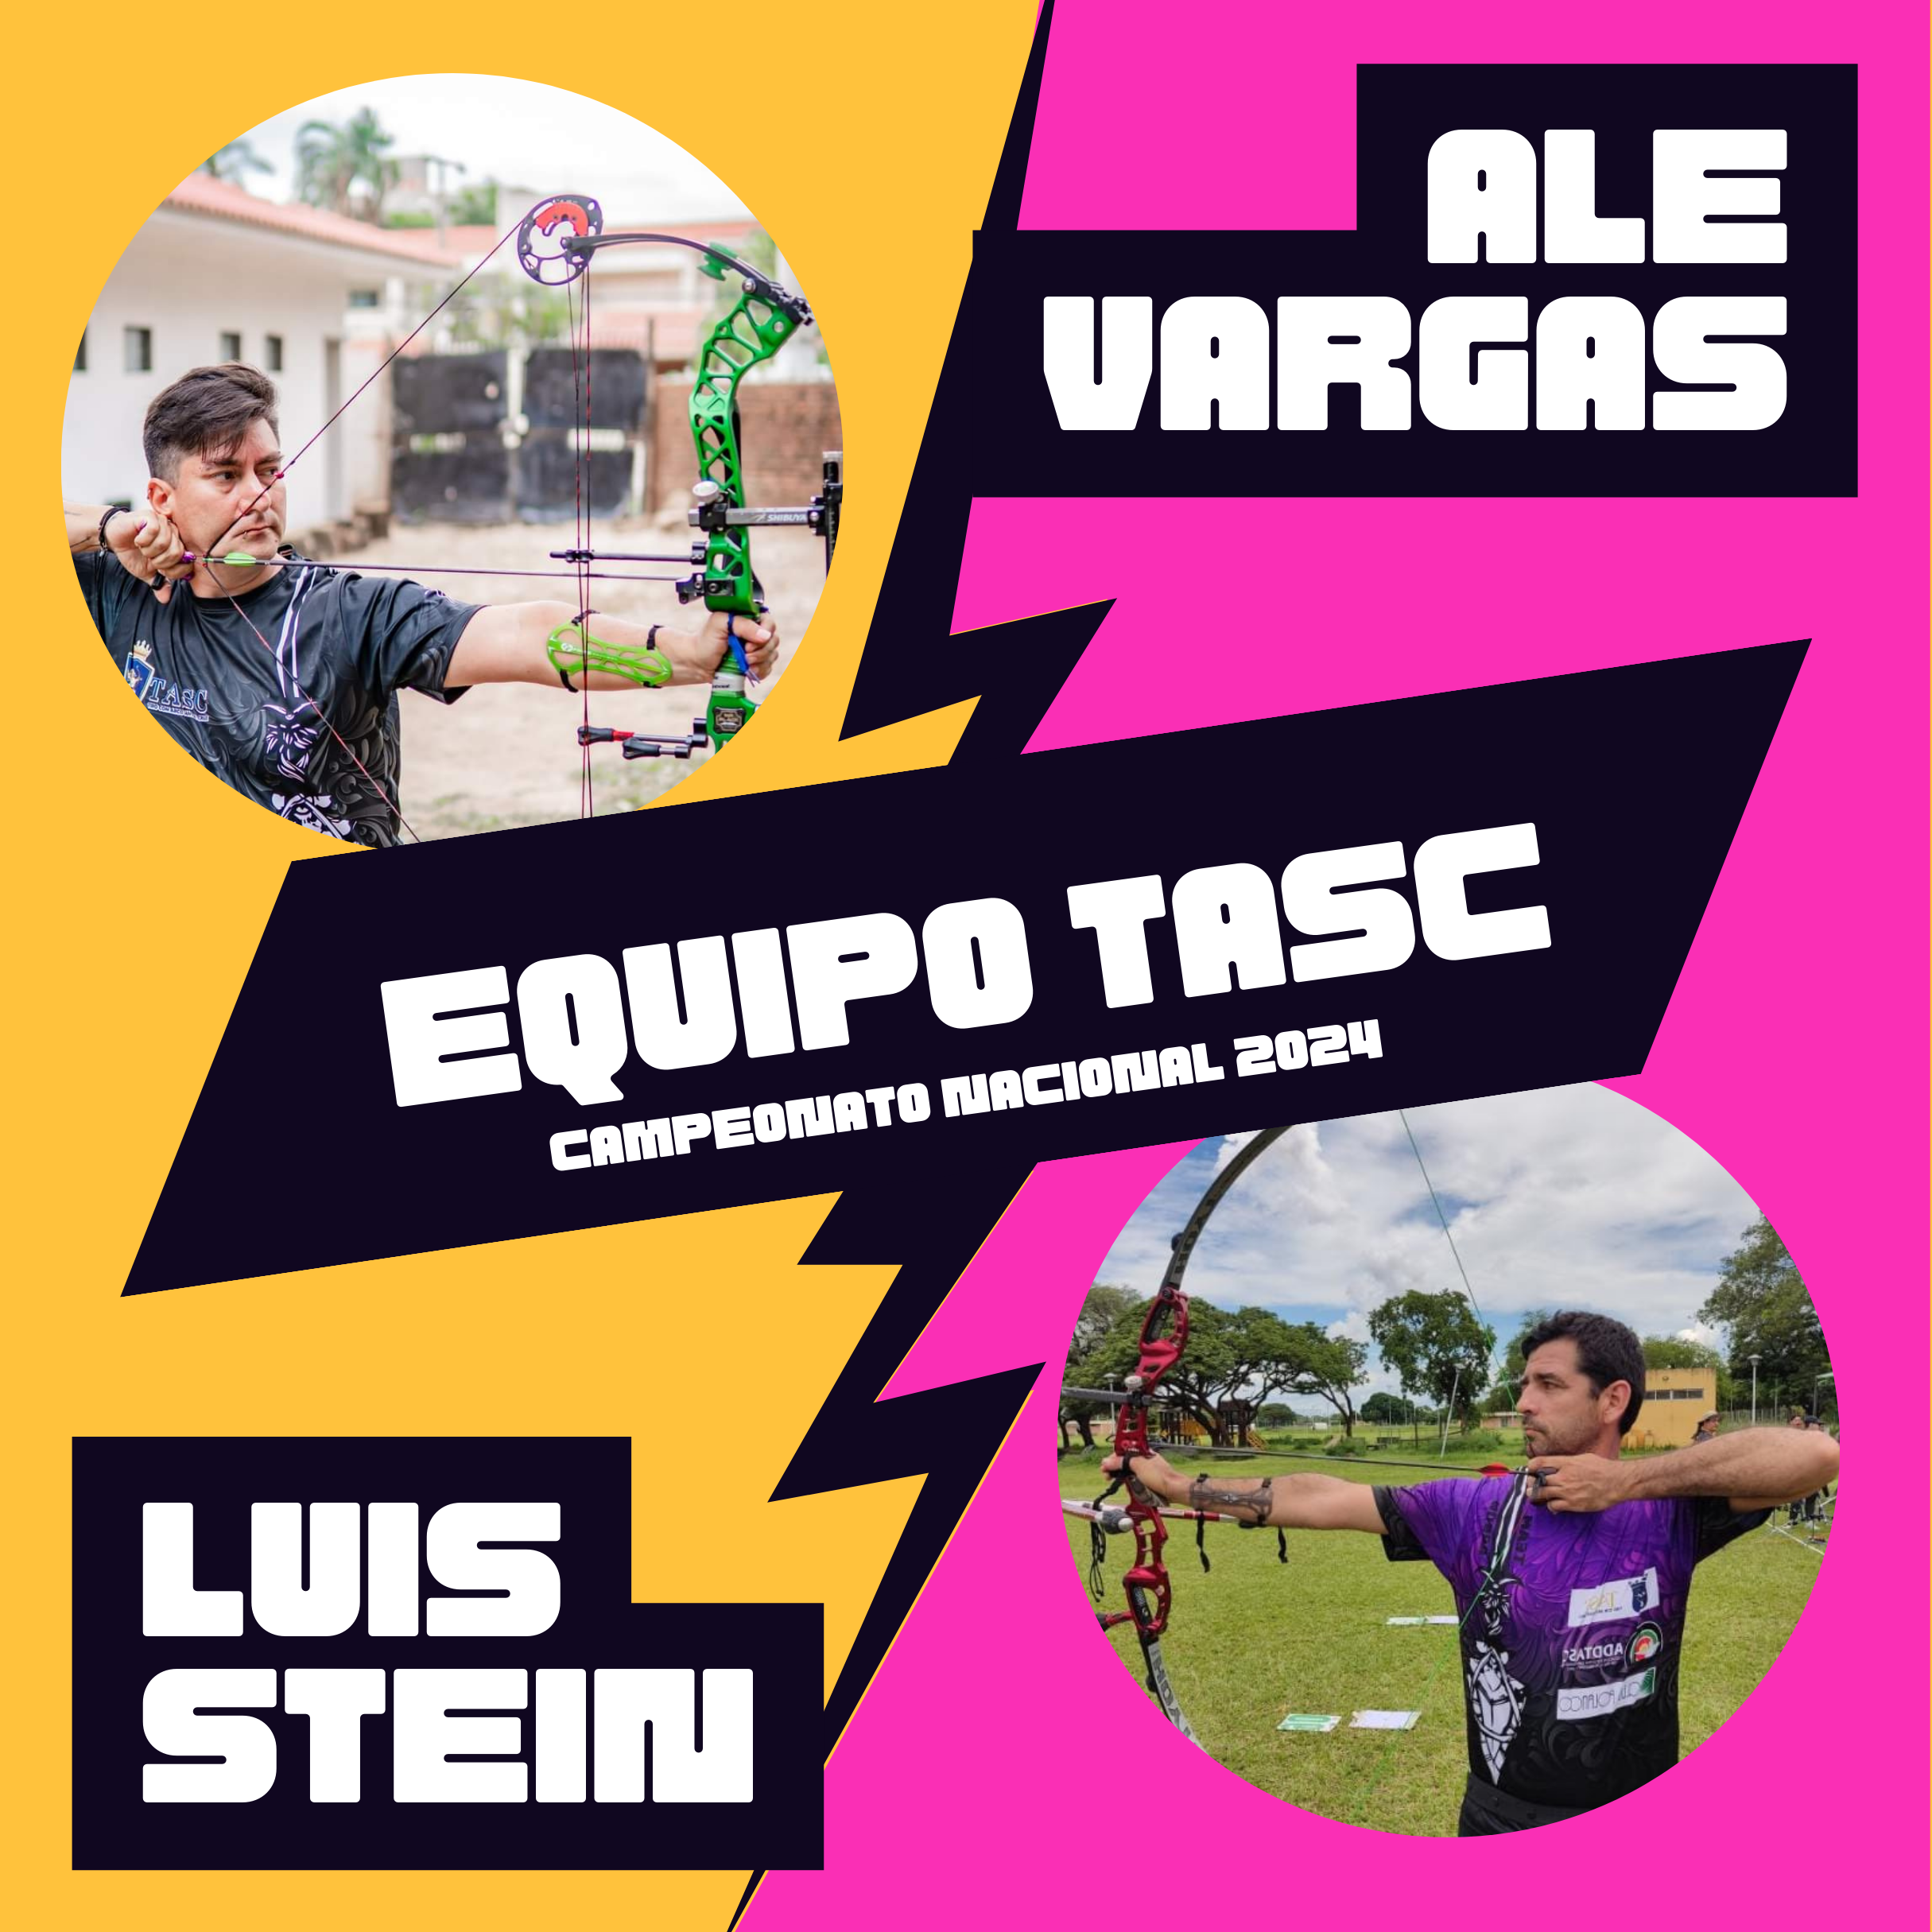 Ale y Luis Representarán al Club TASC en el XXIV Campeonato Nacional de Tiro con Arco en Bolivia